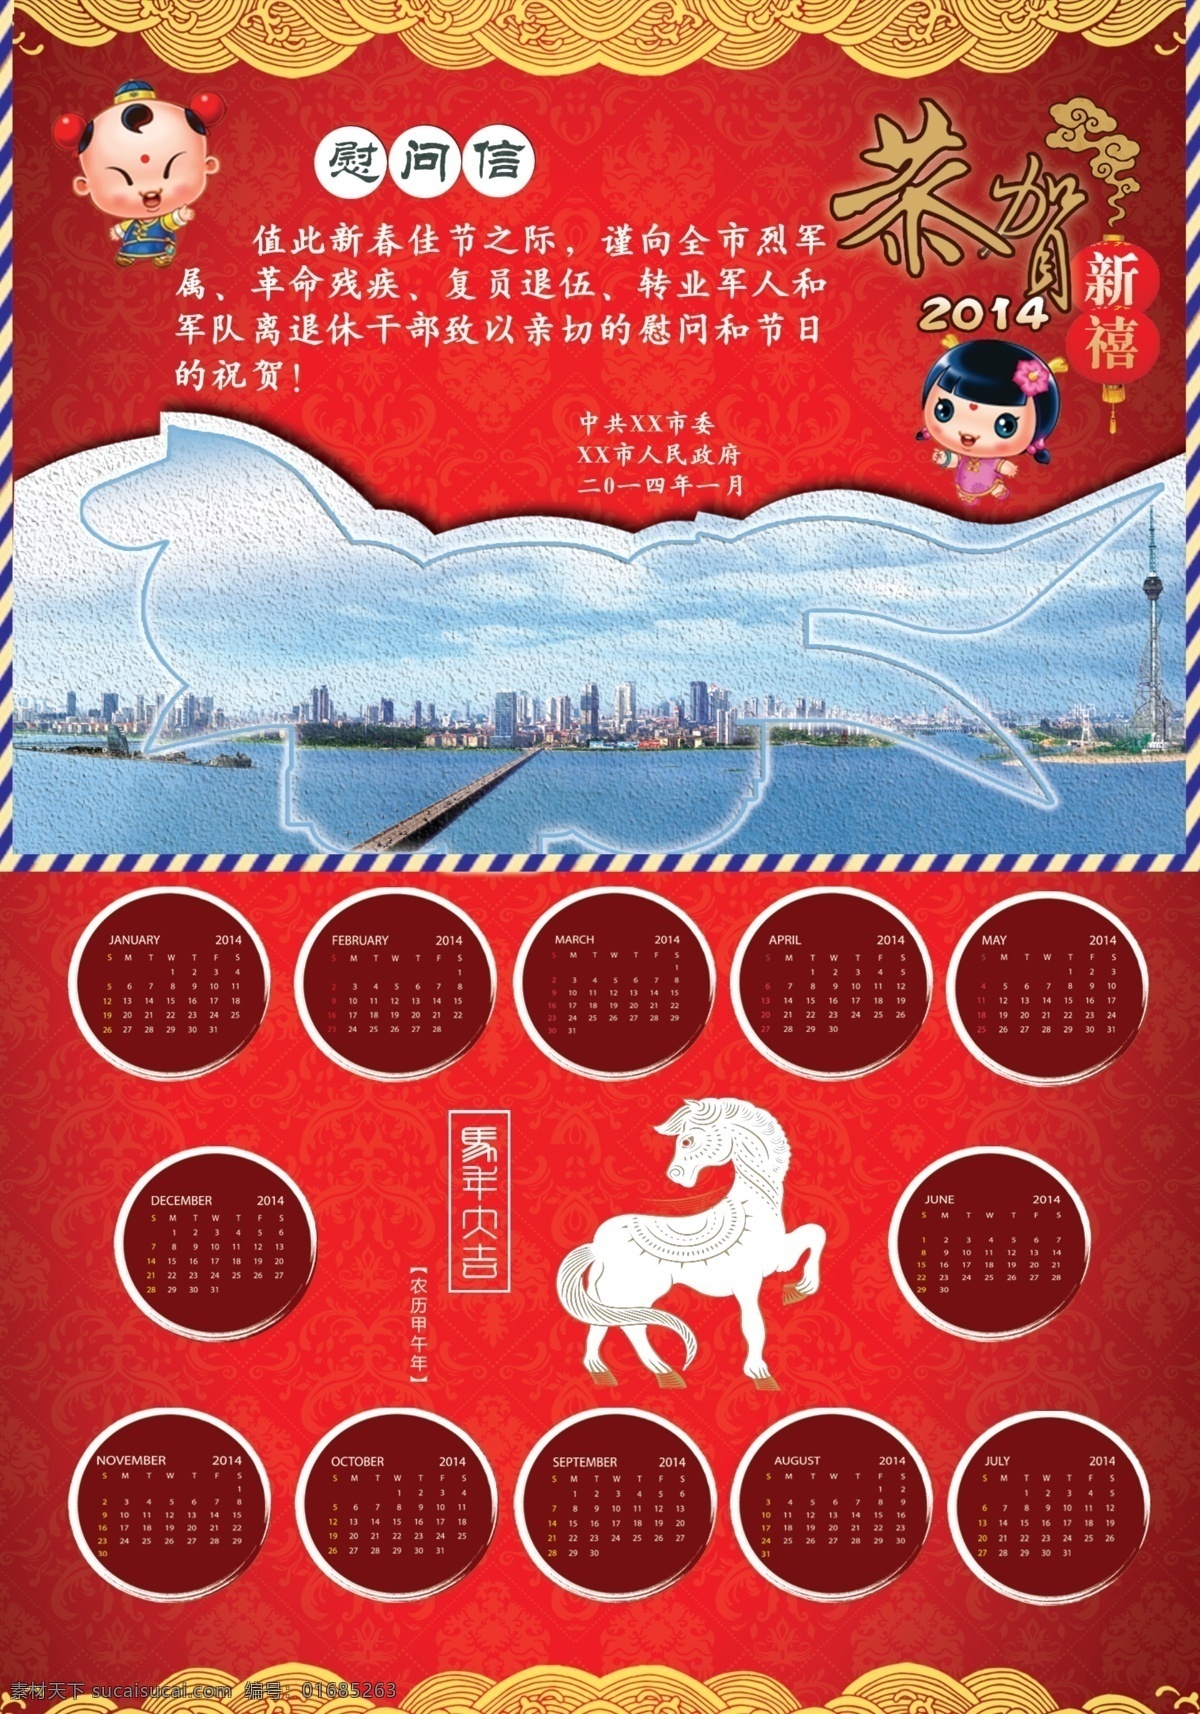 慰问信 2014 马年 日历 广告设计模板 源文件 红色